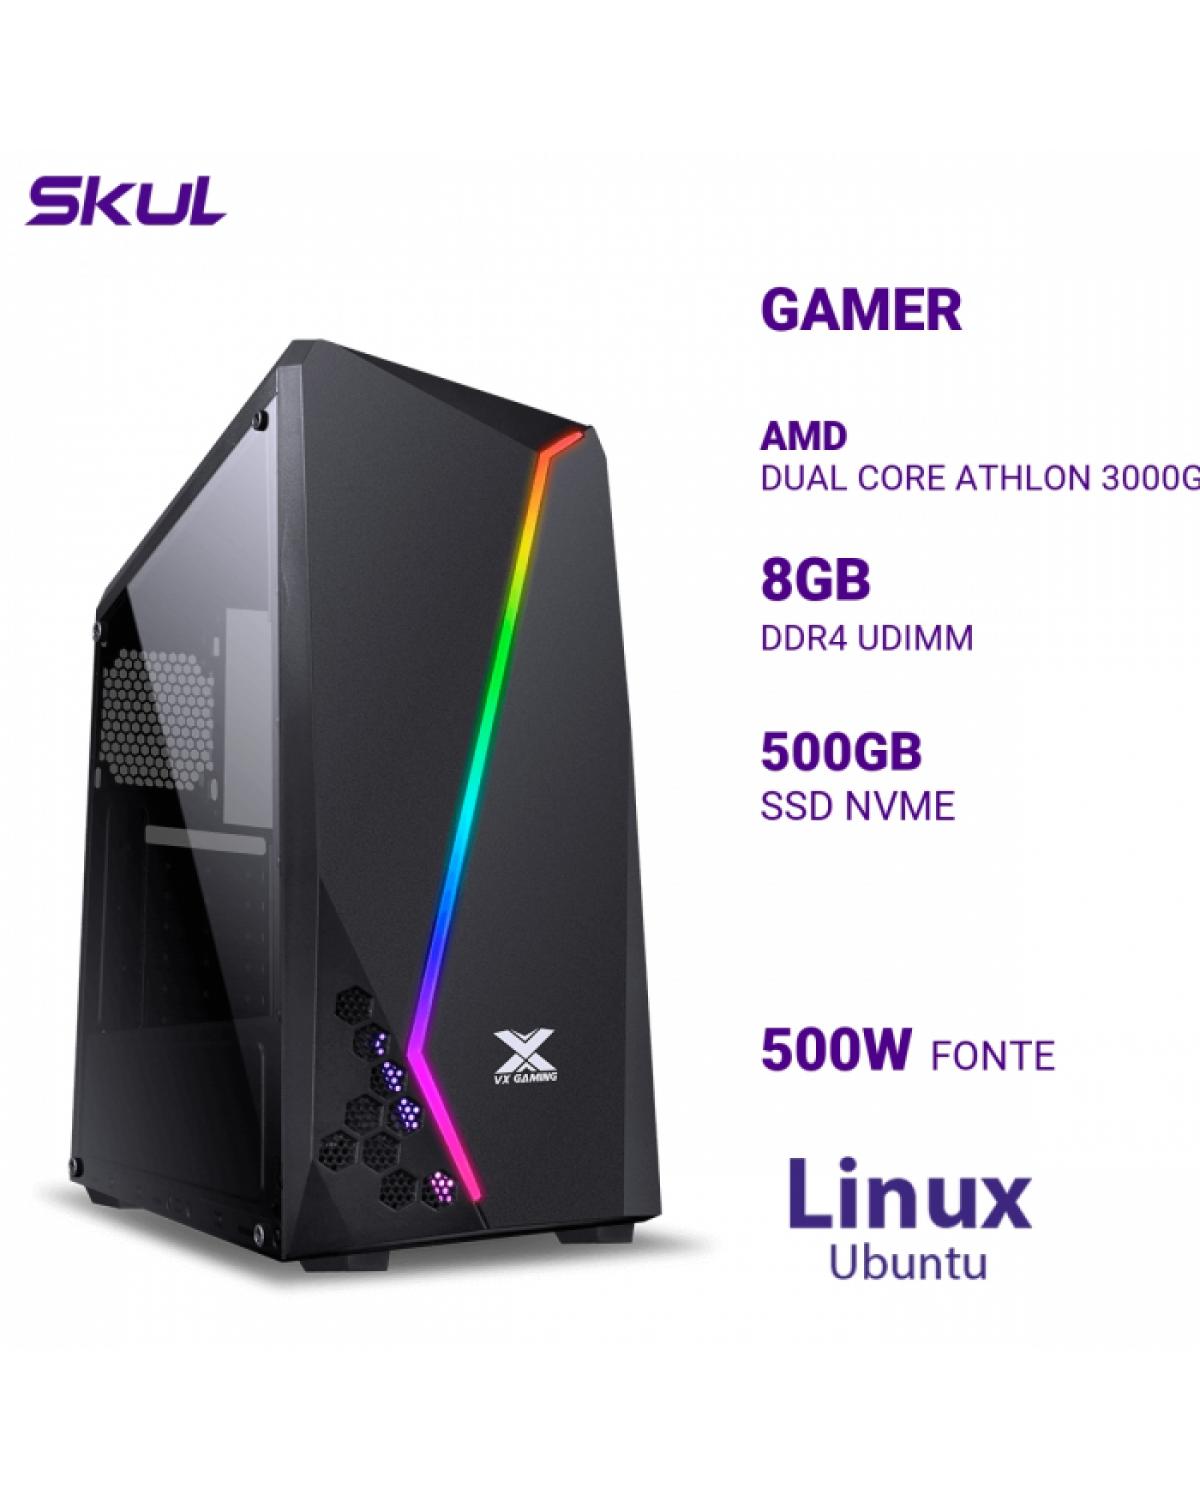 COMPUTADOR GAMER 1000 DUAL CORE ATHLON 3000G 3.50GHZ MEM 8GB DDR4 SSD 500GB NVME FONTE 500W LINUX